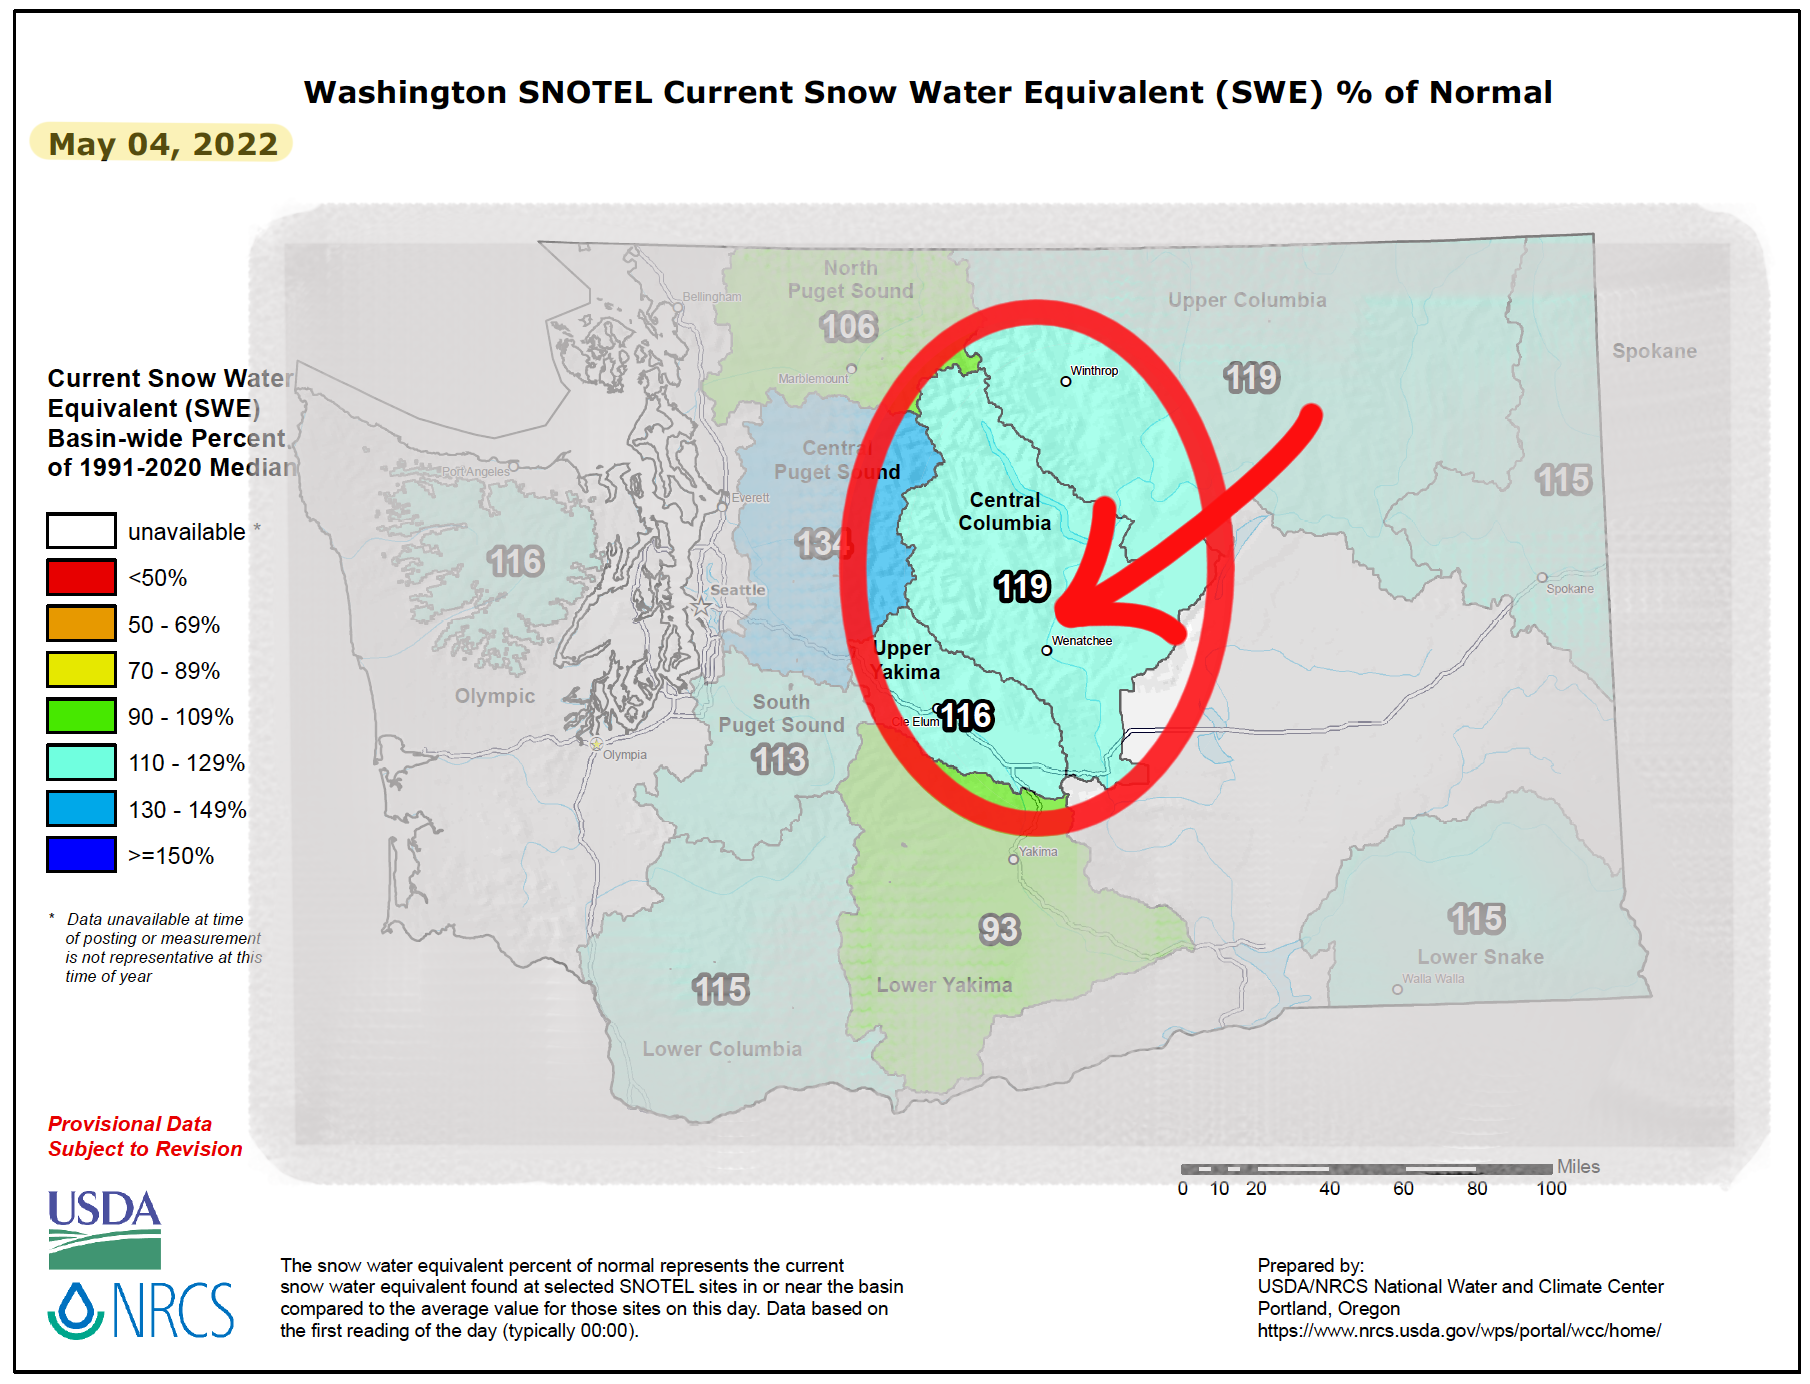 Washington SNOTEL Data as of May 4, 2022.